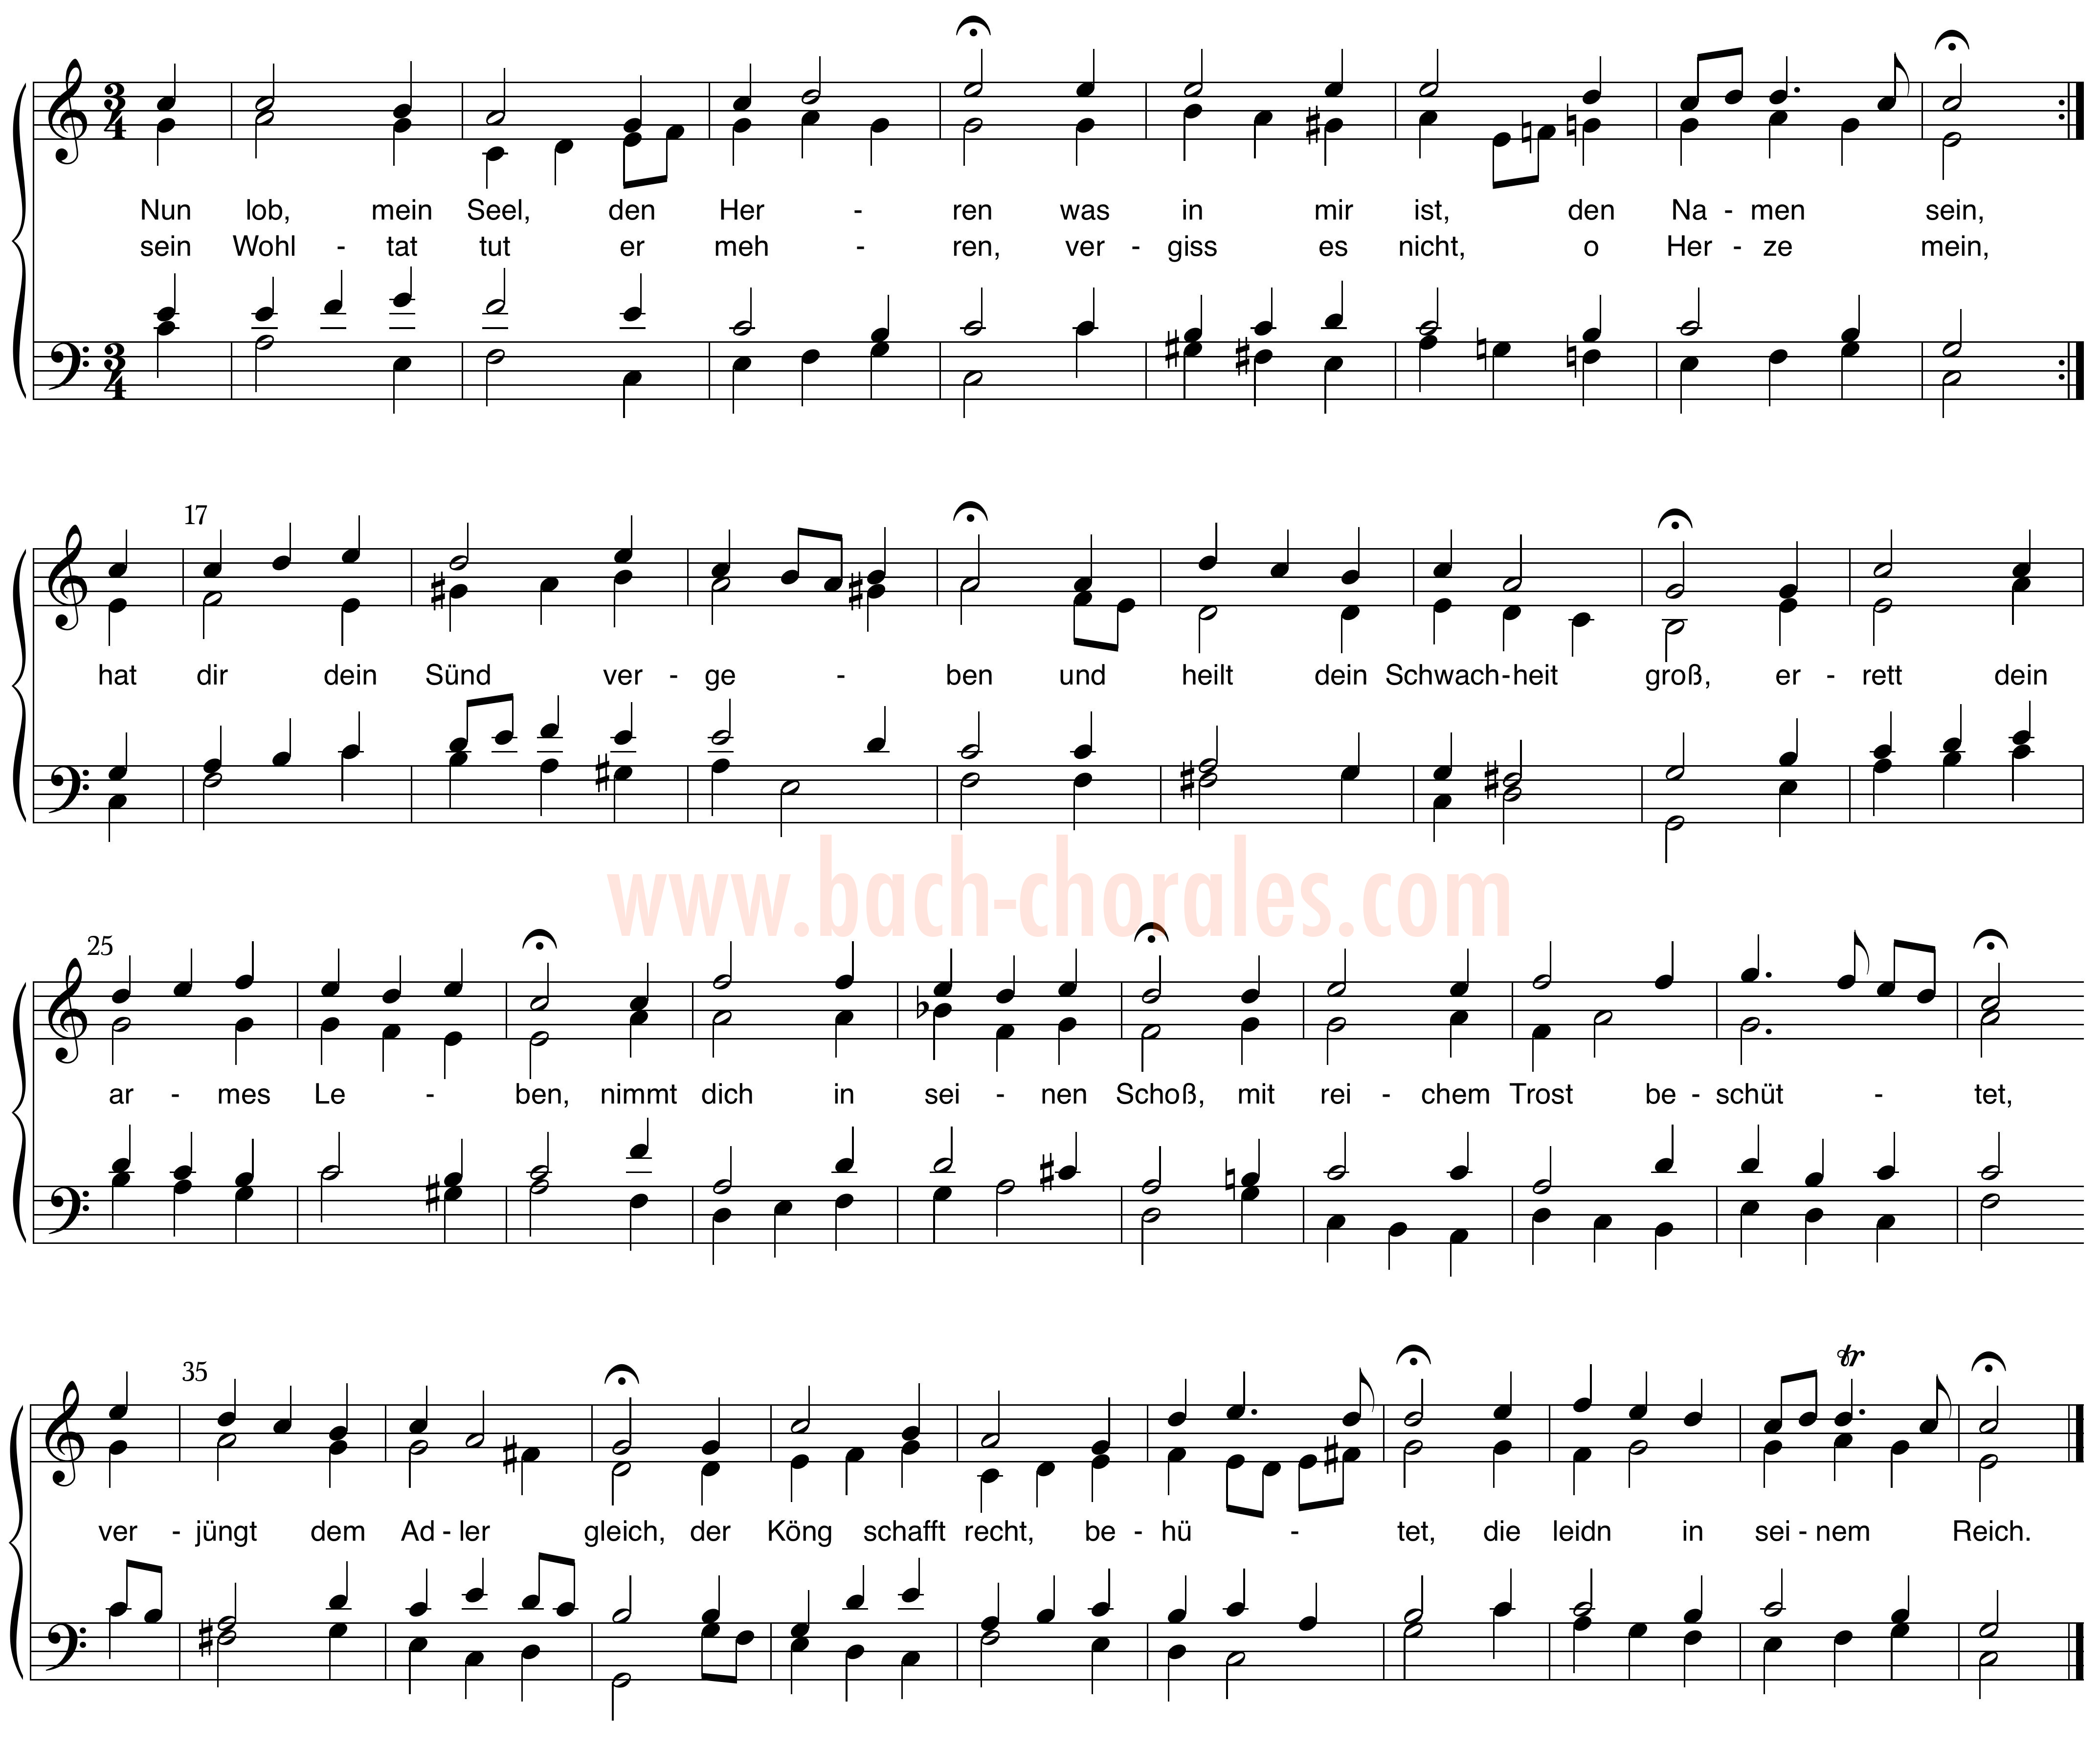 notenbeeld BWV 390 op https://www.bach-chorales.com/